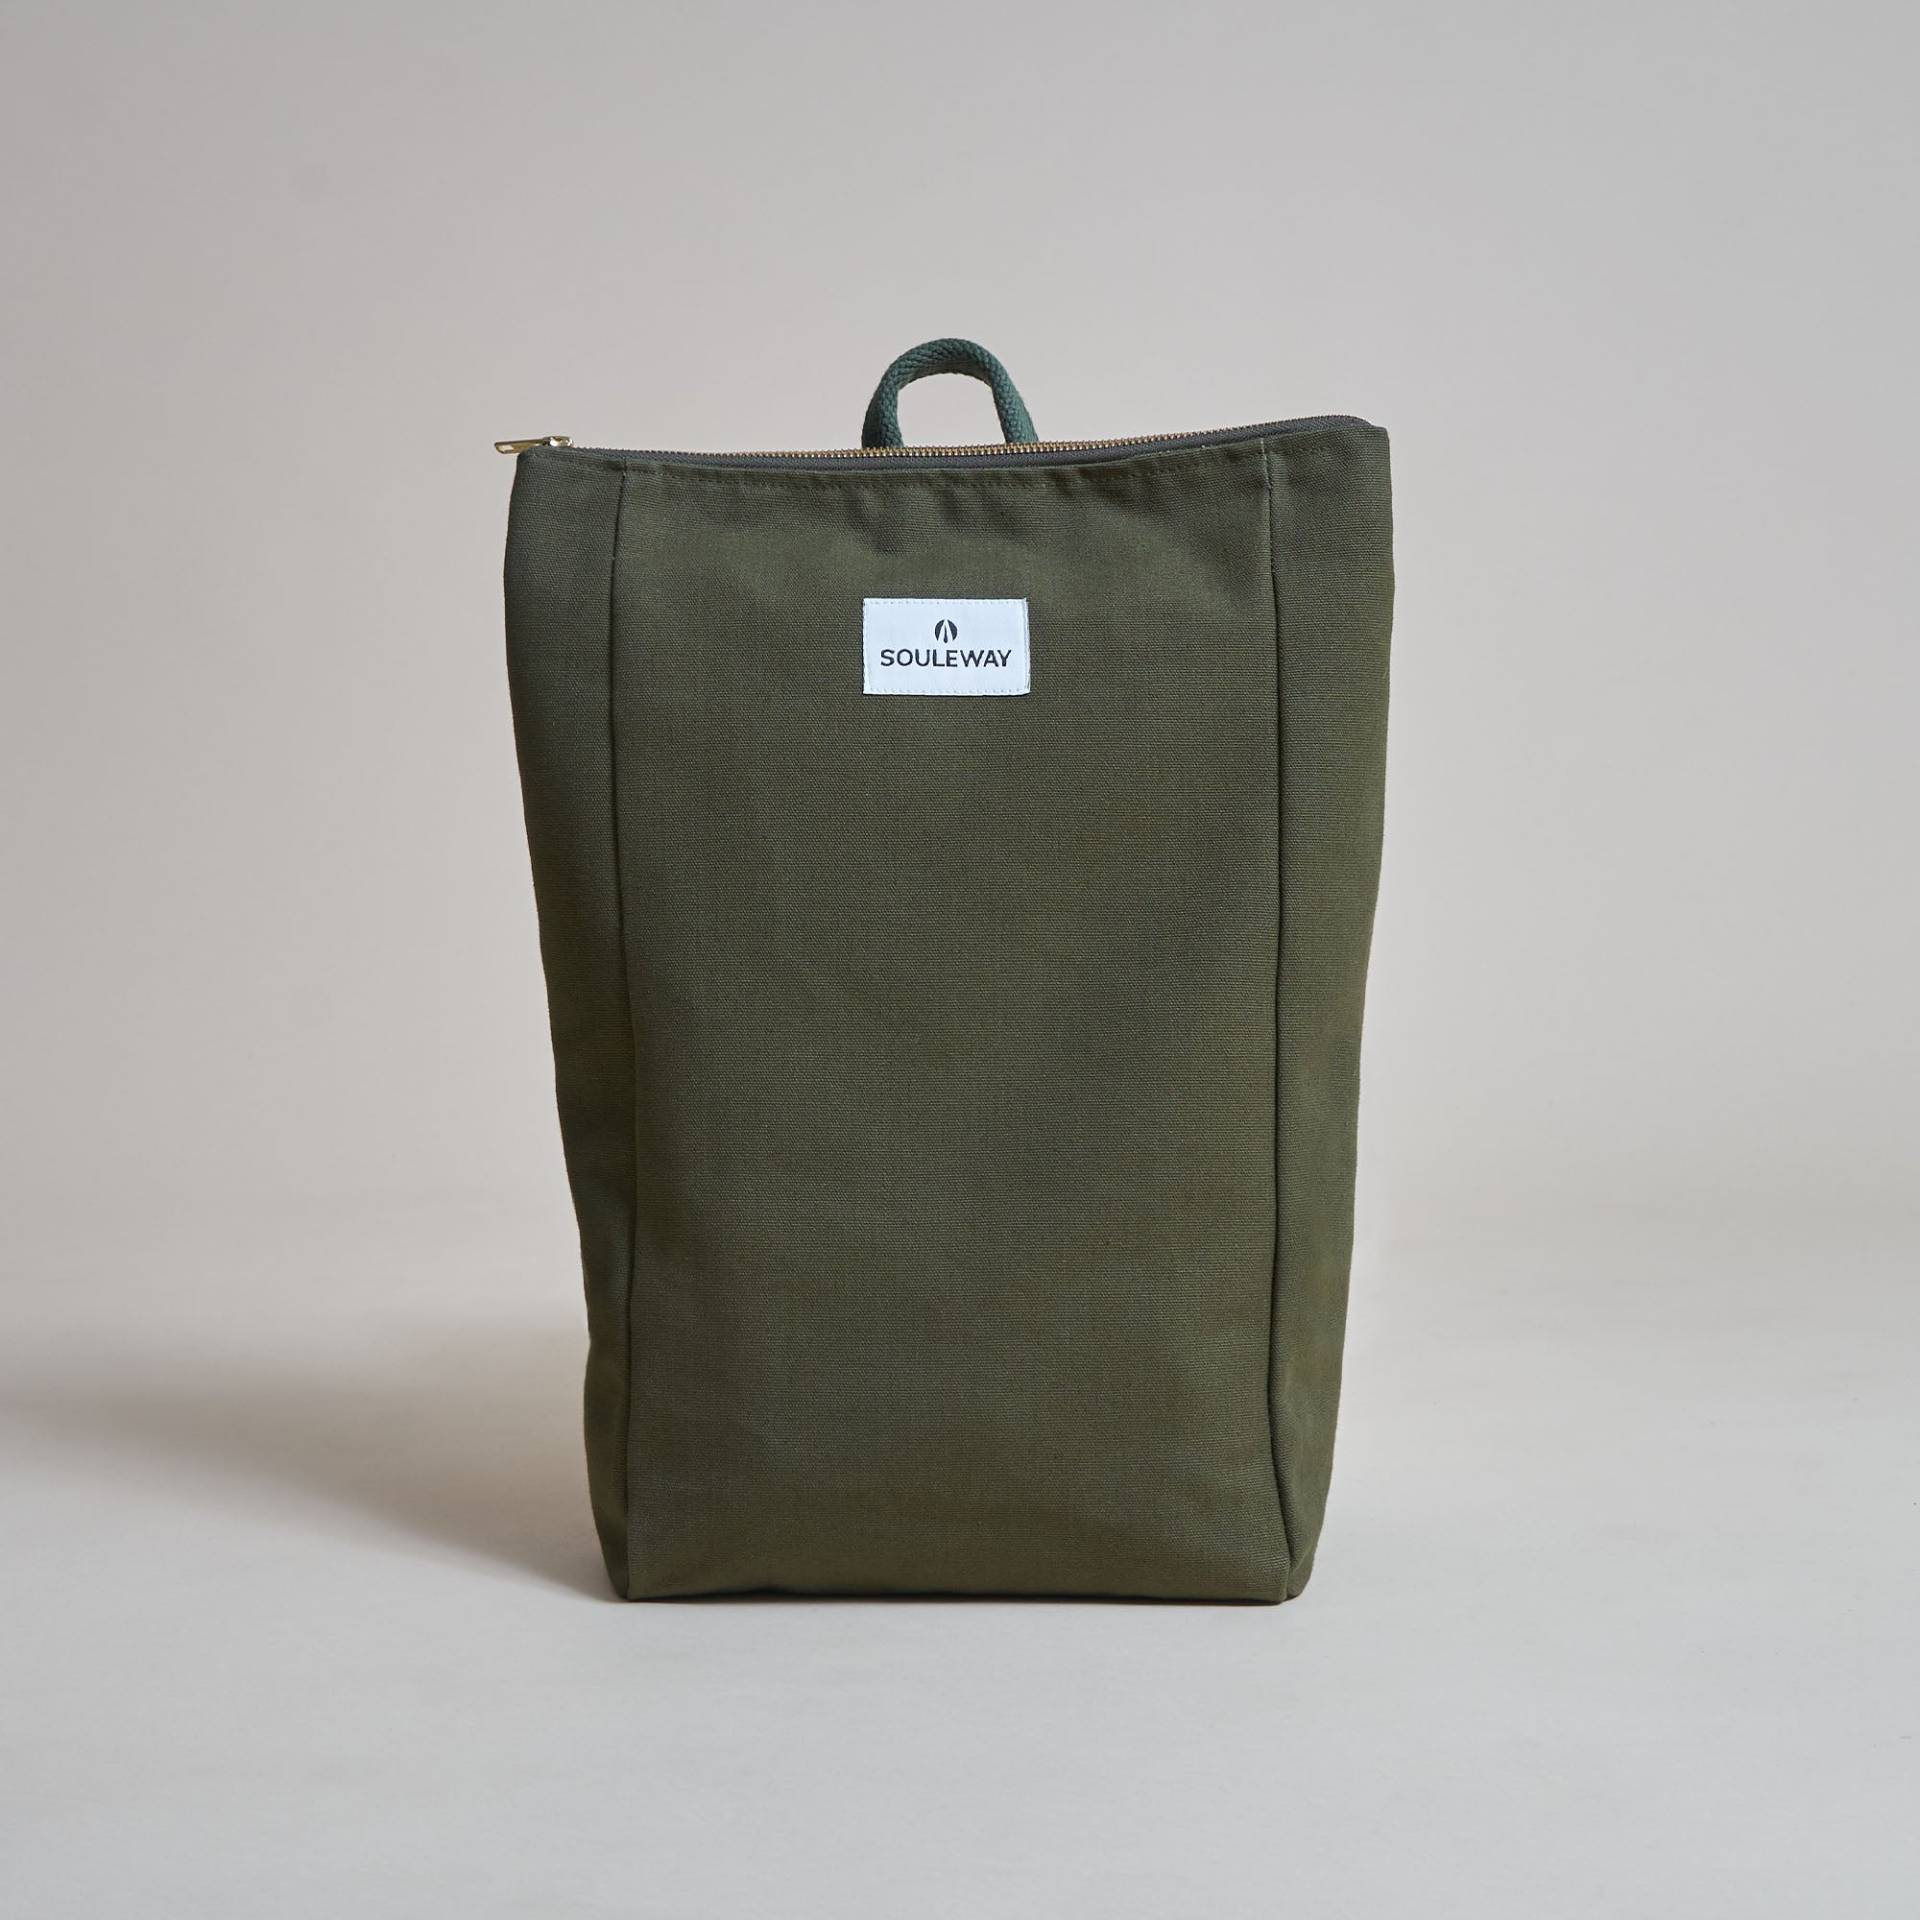 SOULEWAY - Simple Backpack L, Rucksack, 15 Liter Volumen, Laptopfach 13 Zoll, Made in Germany, Handgepäck, vegan, wasserabweisend, Dark Olive von Souleway